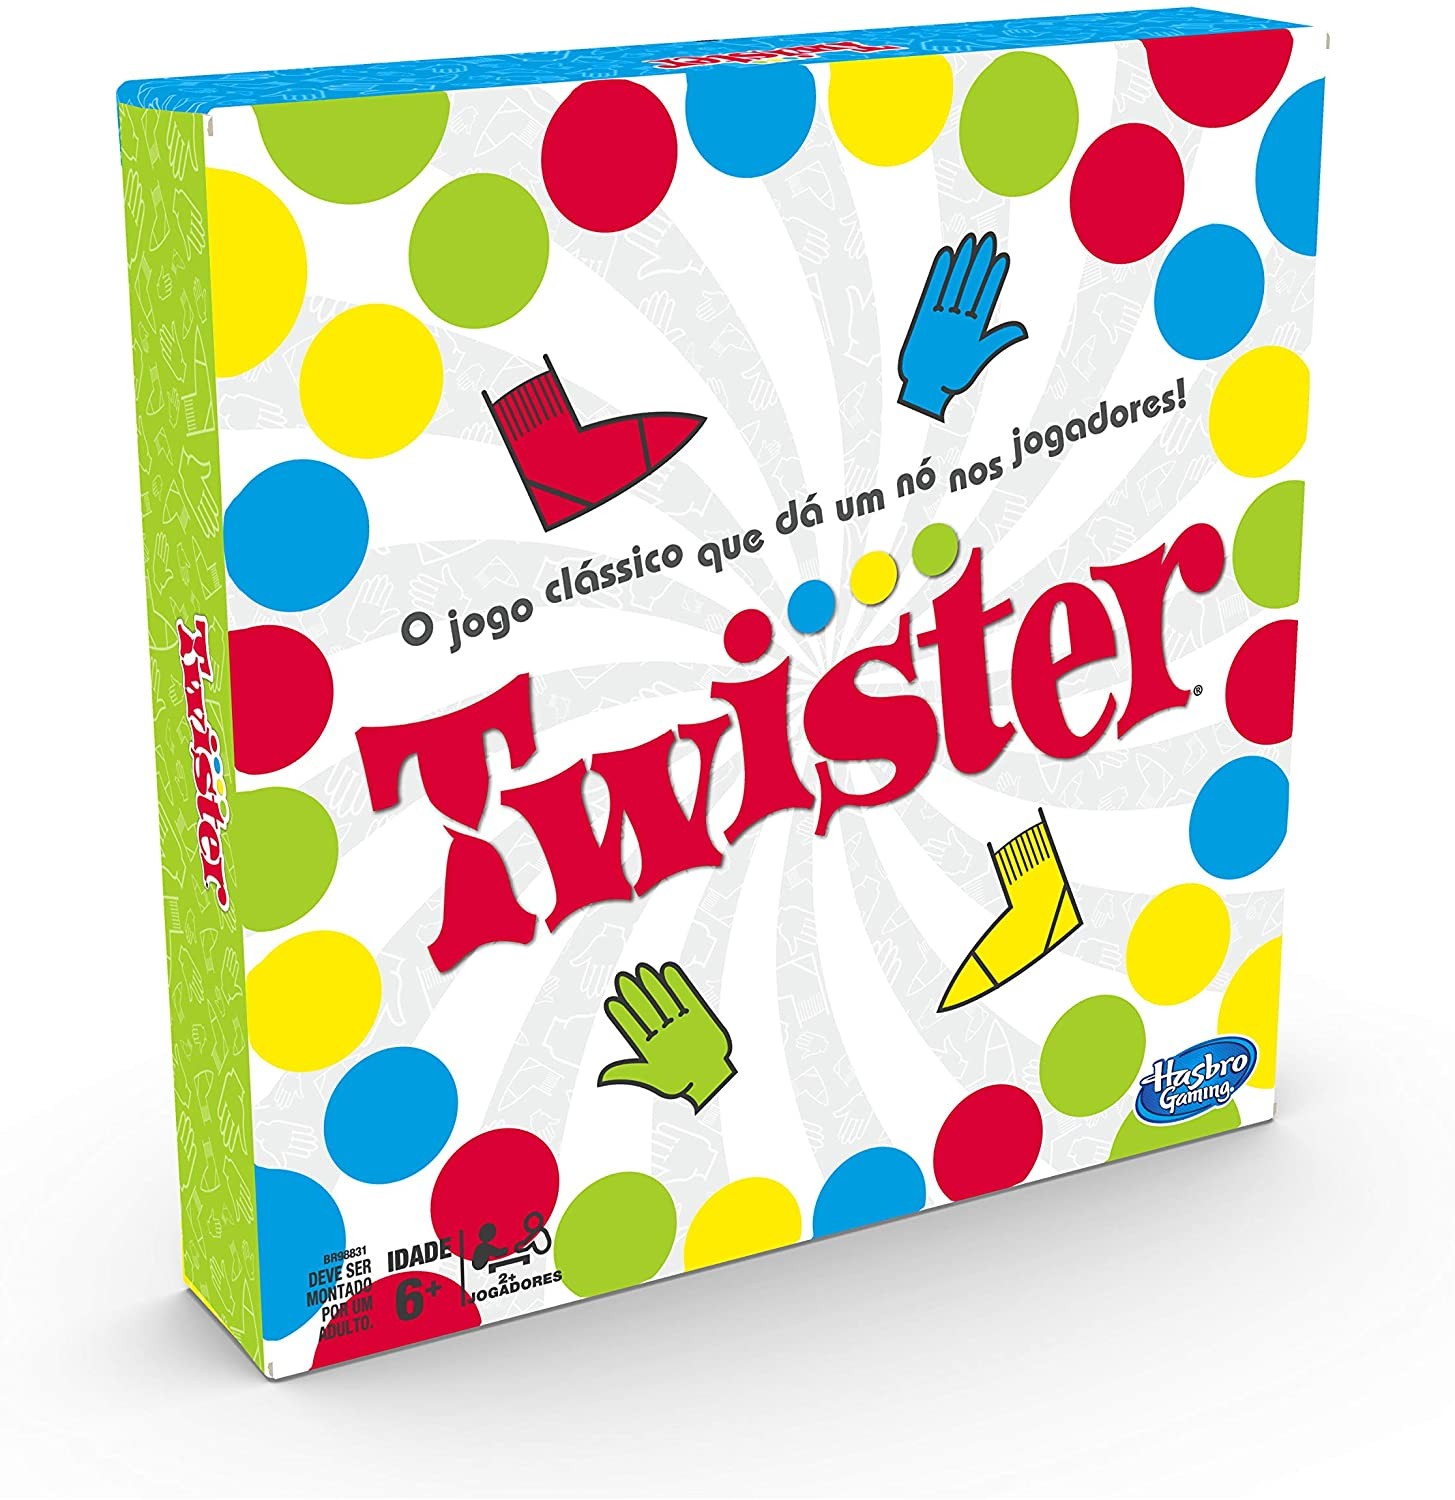 O Twister é um jogo clássico que promete divertir toda a família  (Foto: Reprodução/Amazon)